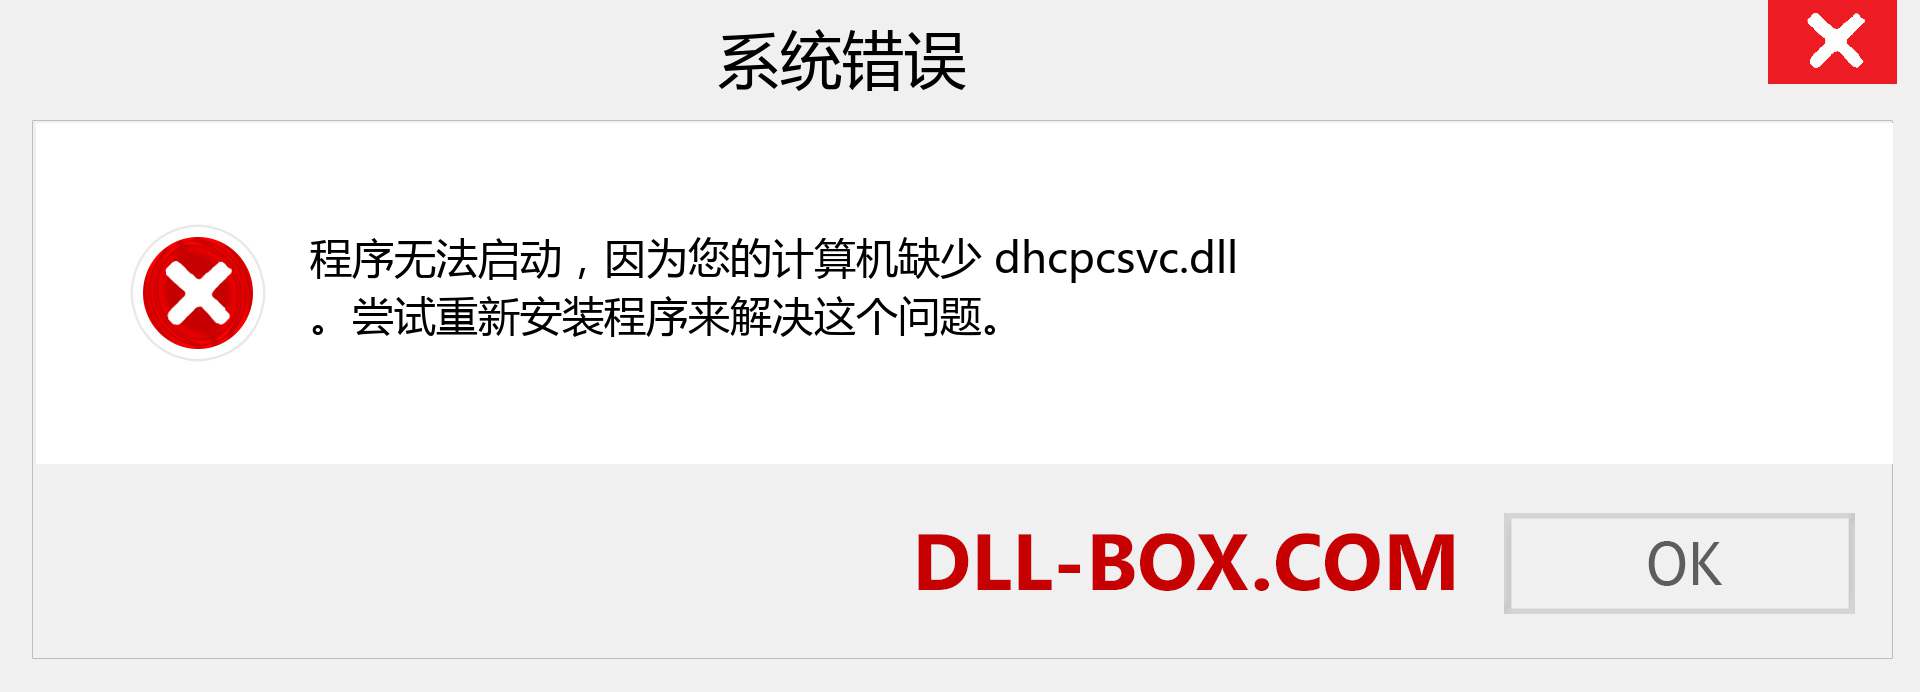 dhcpcsvc.dll 文件丢失？。 适用于 Windows 7、8、10 的下载 - 修复 Windows、照片、图像上的 dhcpcsvc dll 丢失错误